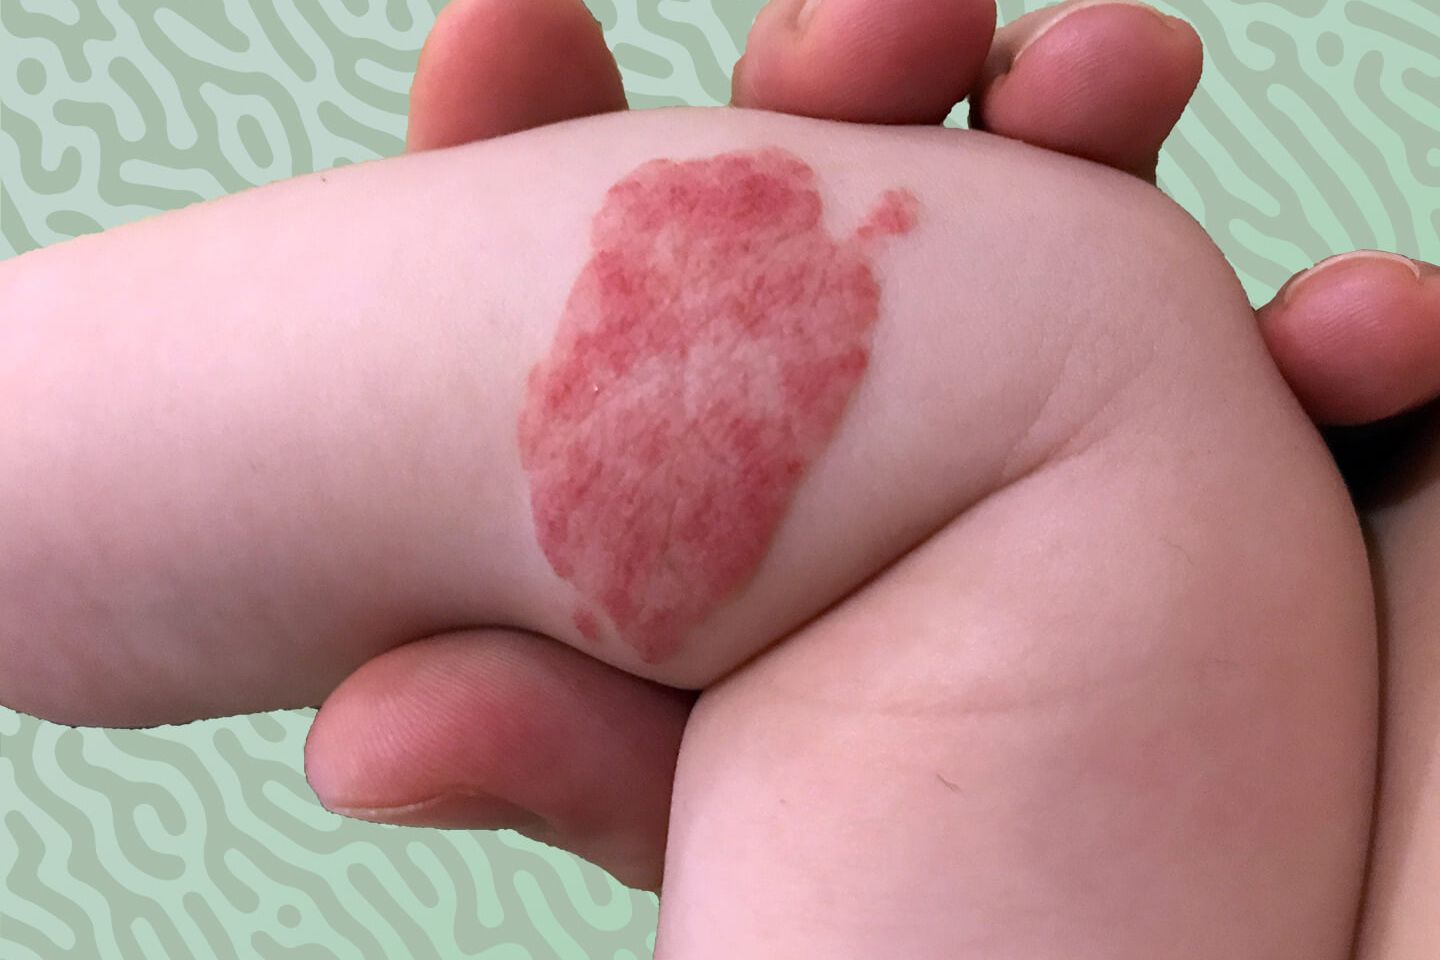 U máu trên da ở trẻ em có gây ung thư hay không? thumbnail.